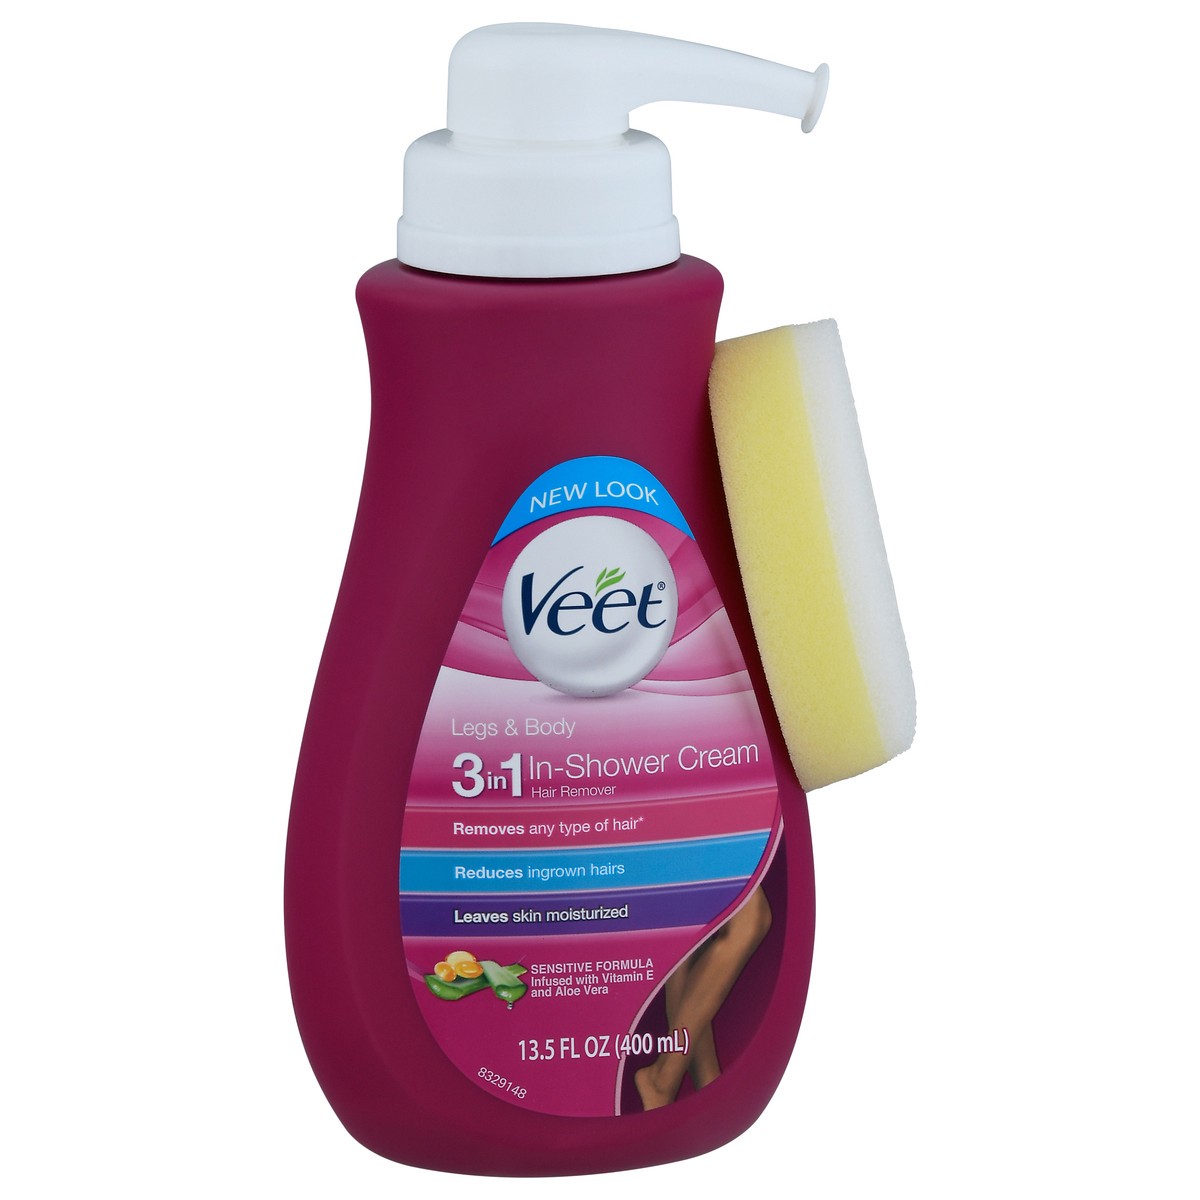 slide 2 of 9, Veet Legs & Body 3in1 In-Shower Cream Hair Remover 13.5 fl oz, 13.5 fl oz